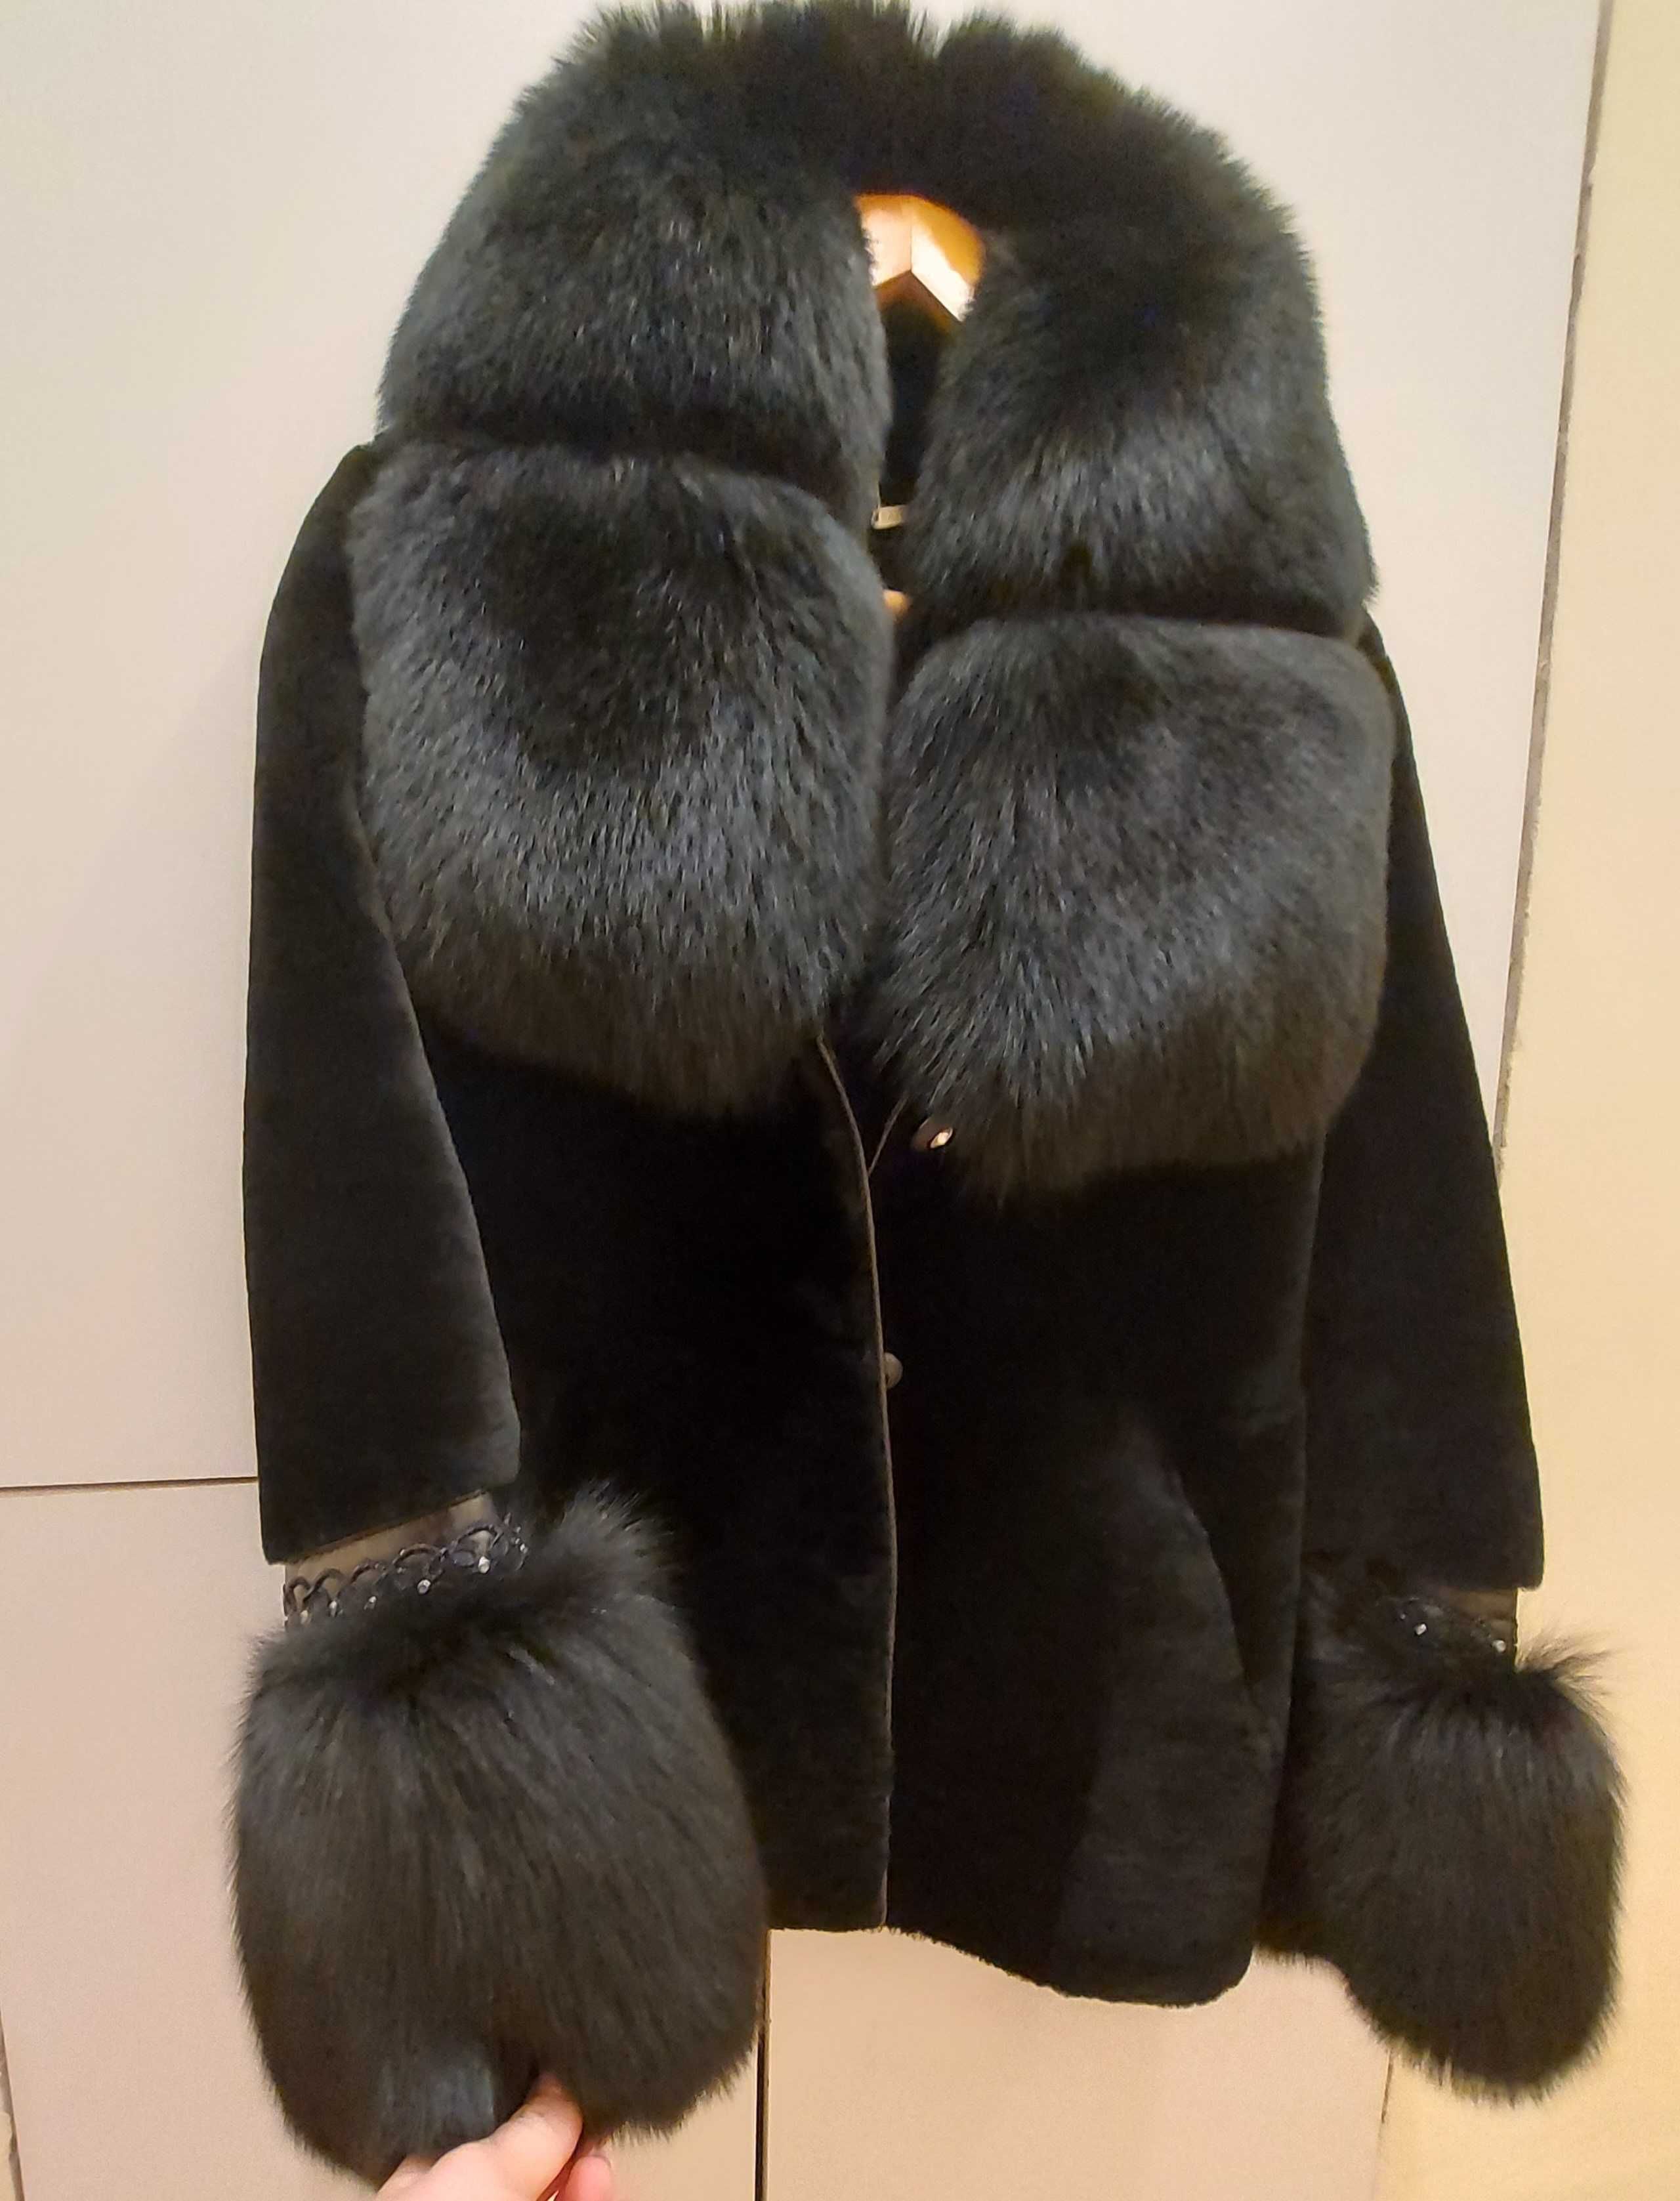 Палто от турска фабрика Sayram - размер XL